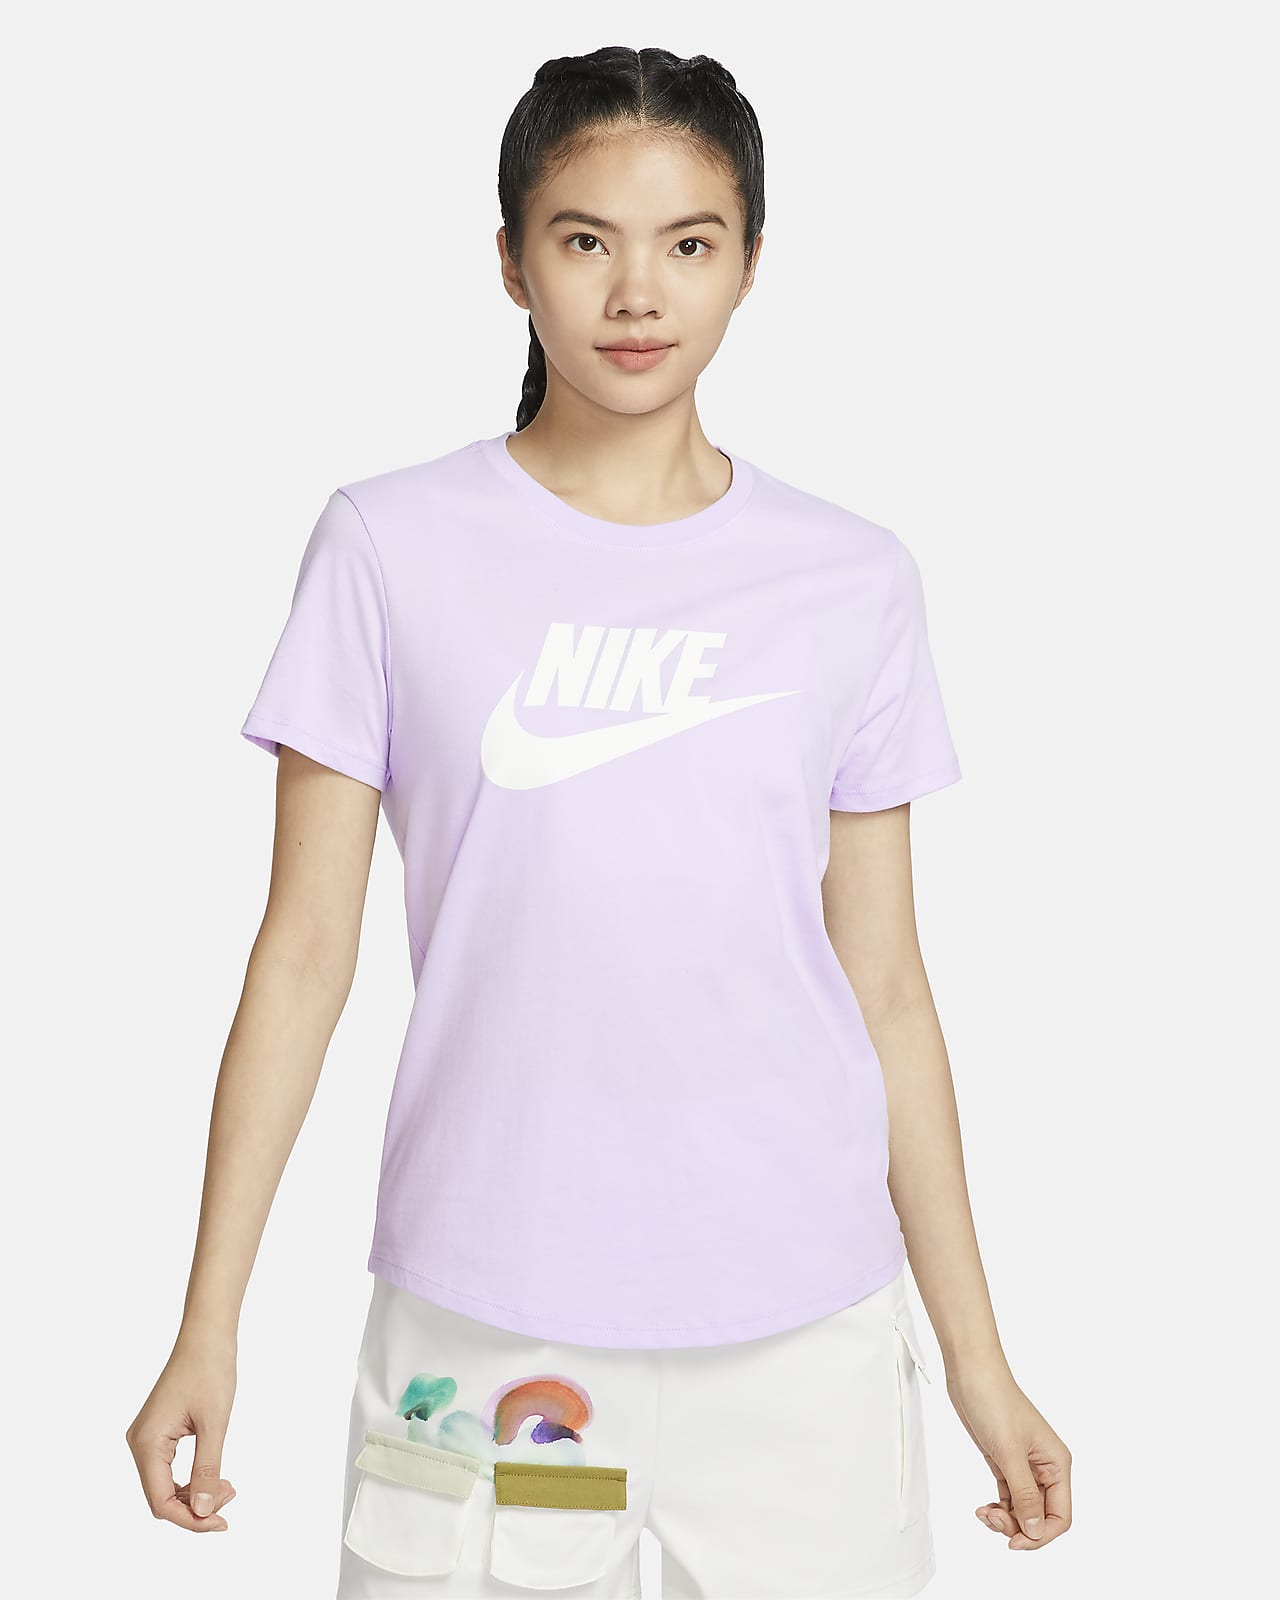 เสื้อยืดผู้หญิงมีโลโก้ Nike Sportswear Essentials